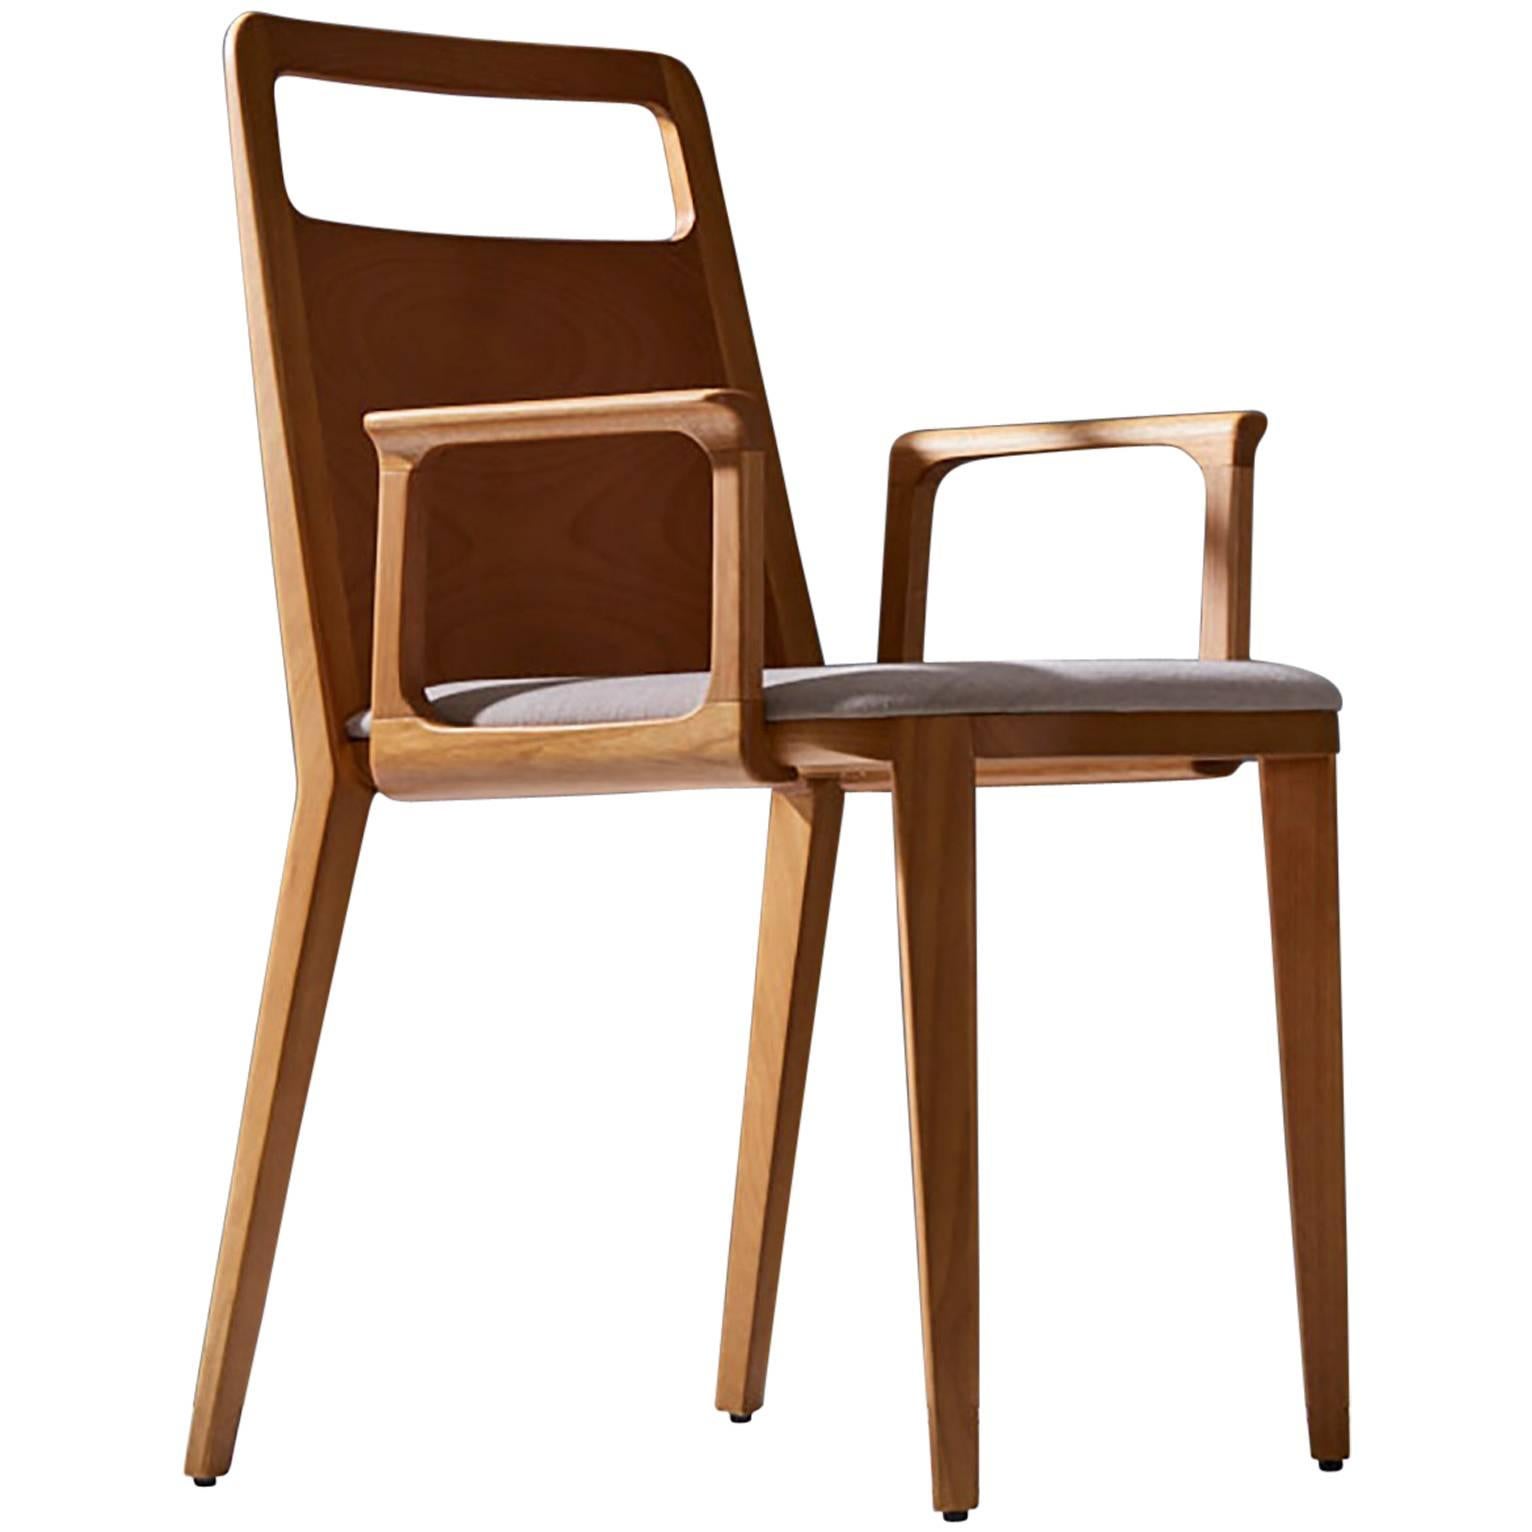 Minimalistischer Stuhl aus Massivholz mit Sitzmöbeln aus Textil oder Leder